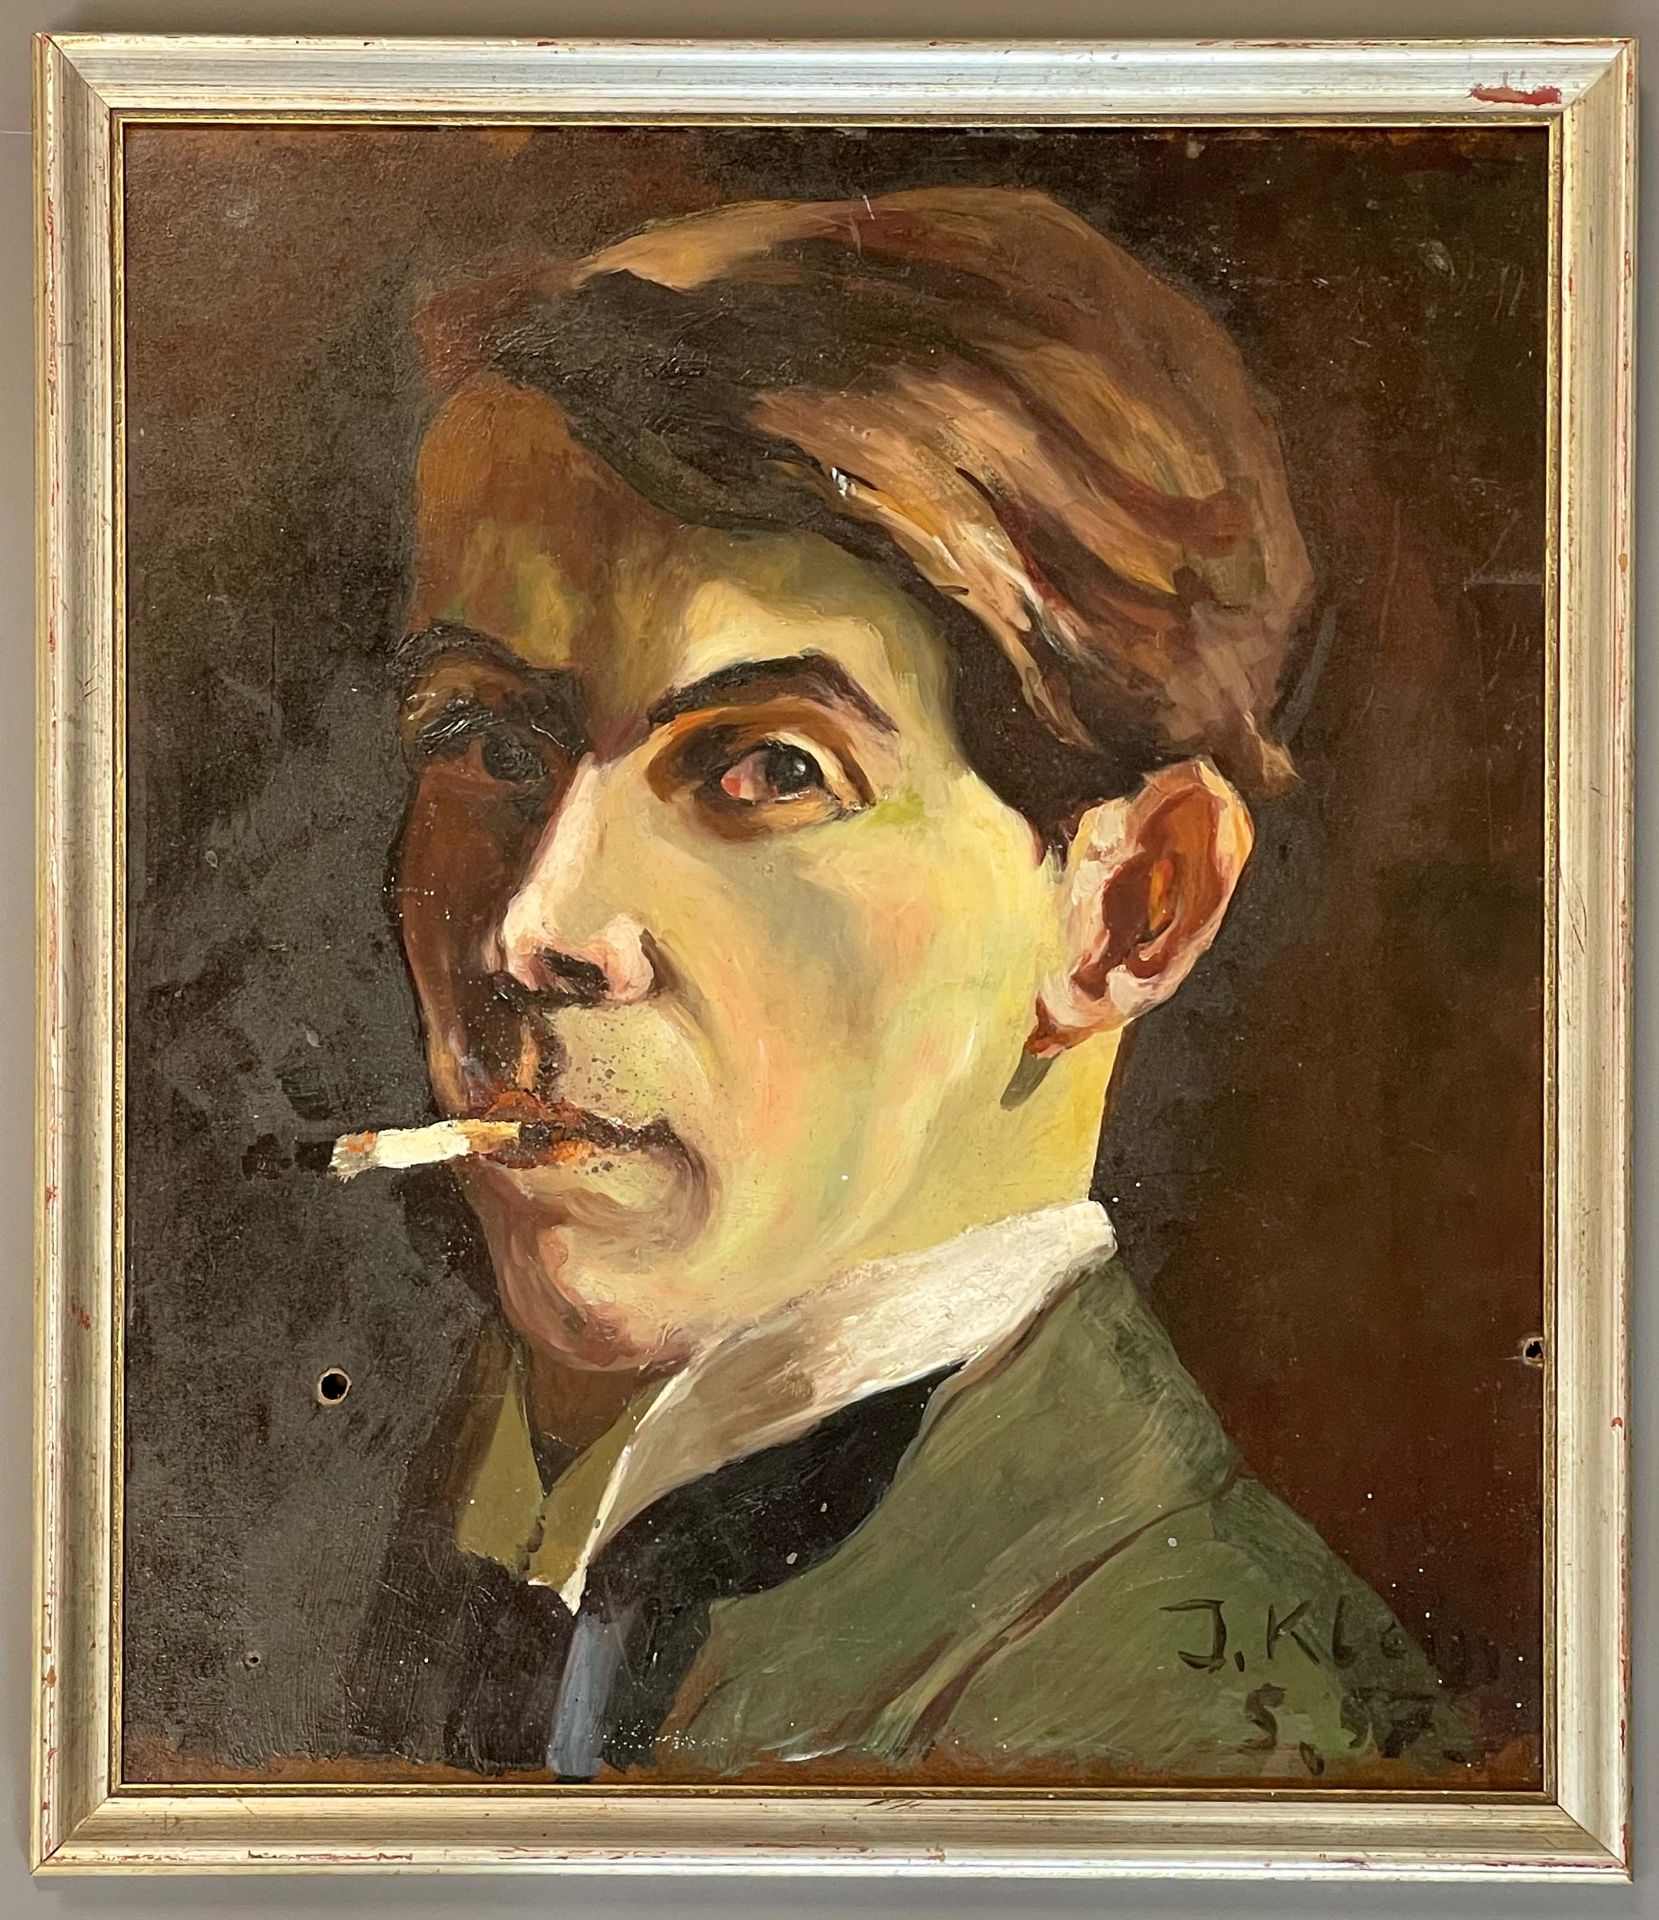 J. KLEIN (XX). Herrenportrait mit Zigarette (1957). - Bild 2 aus 13